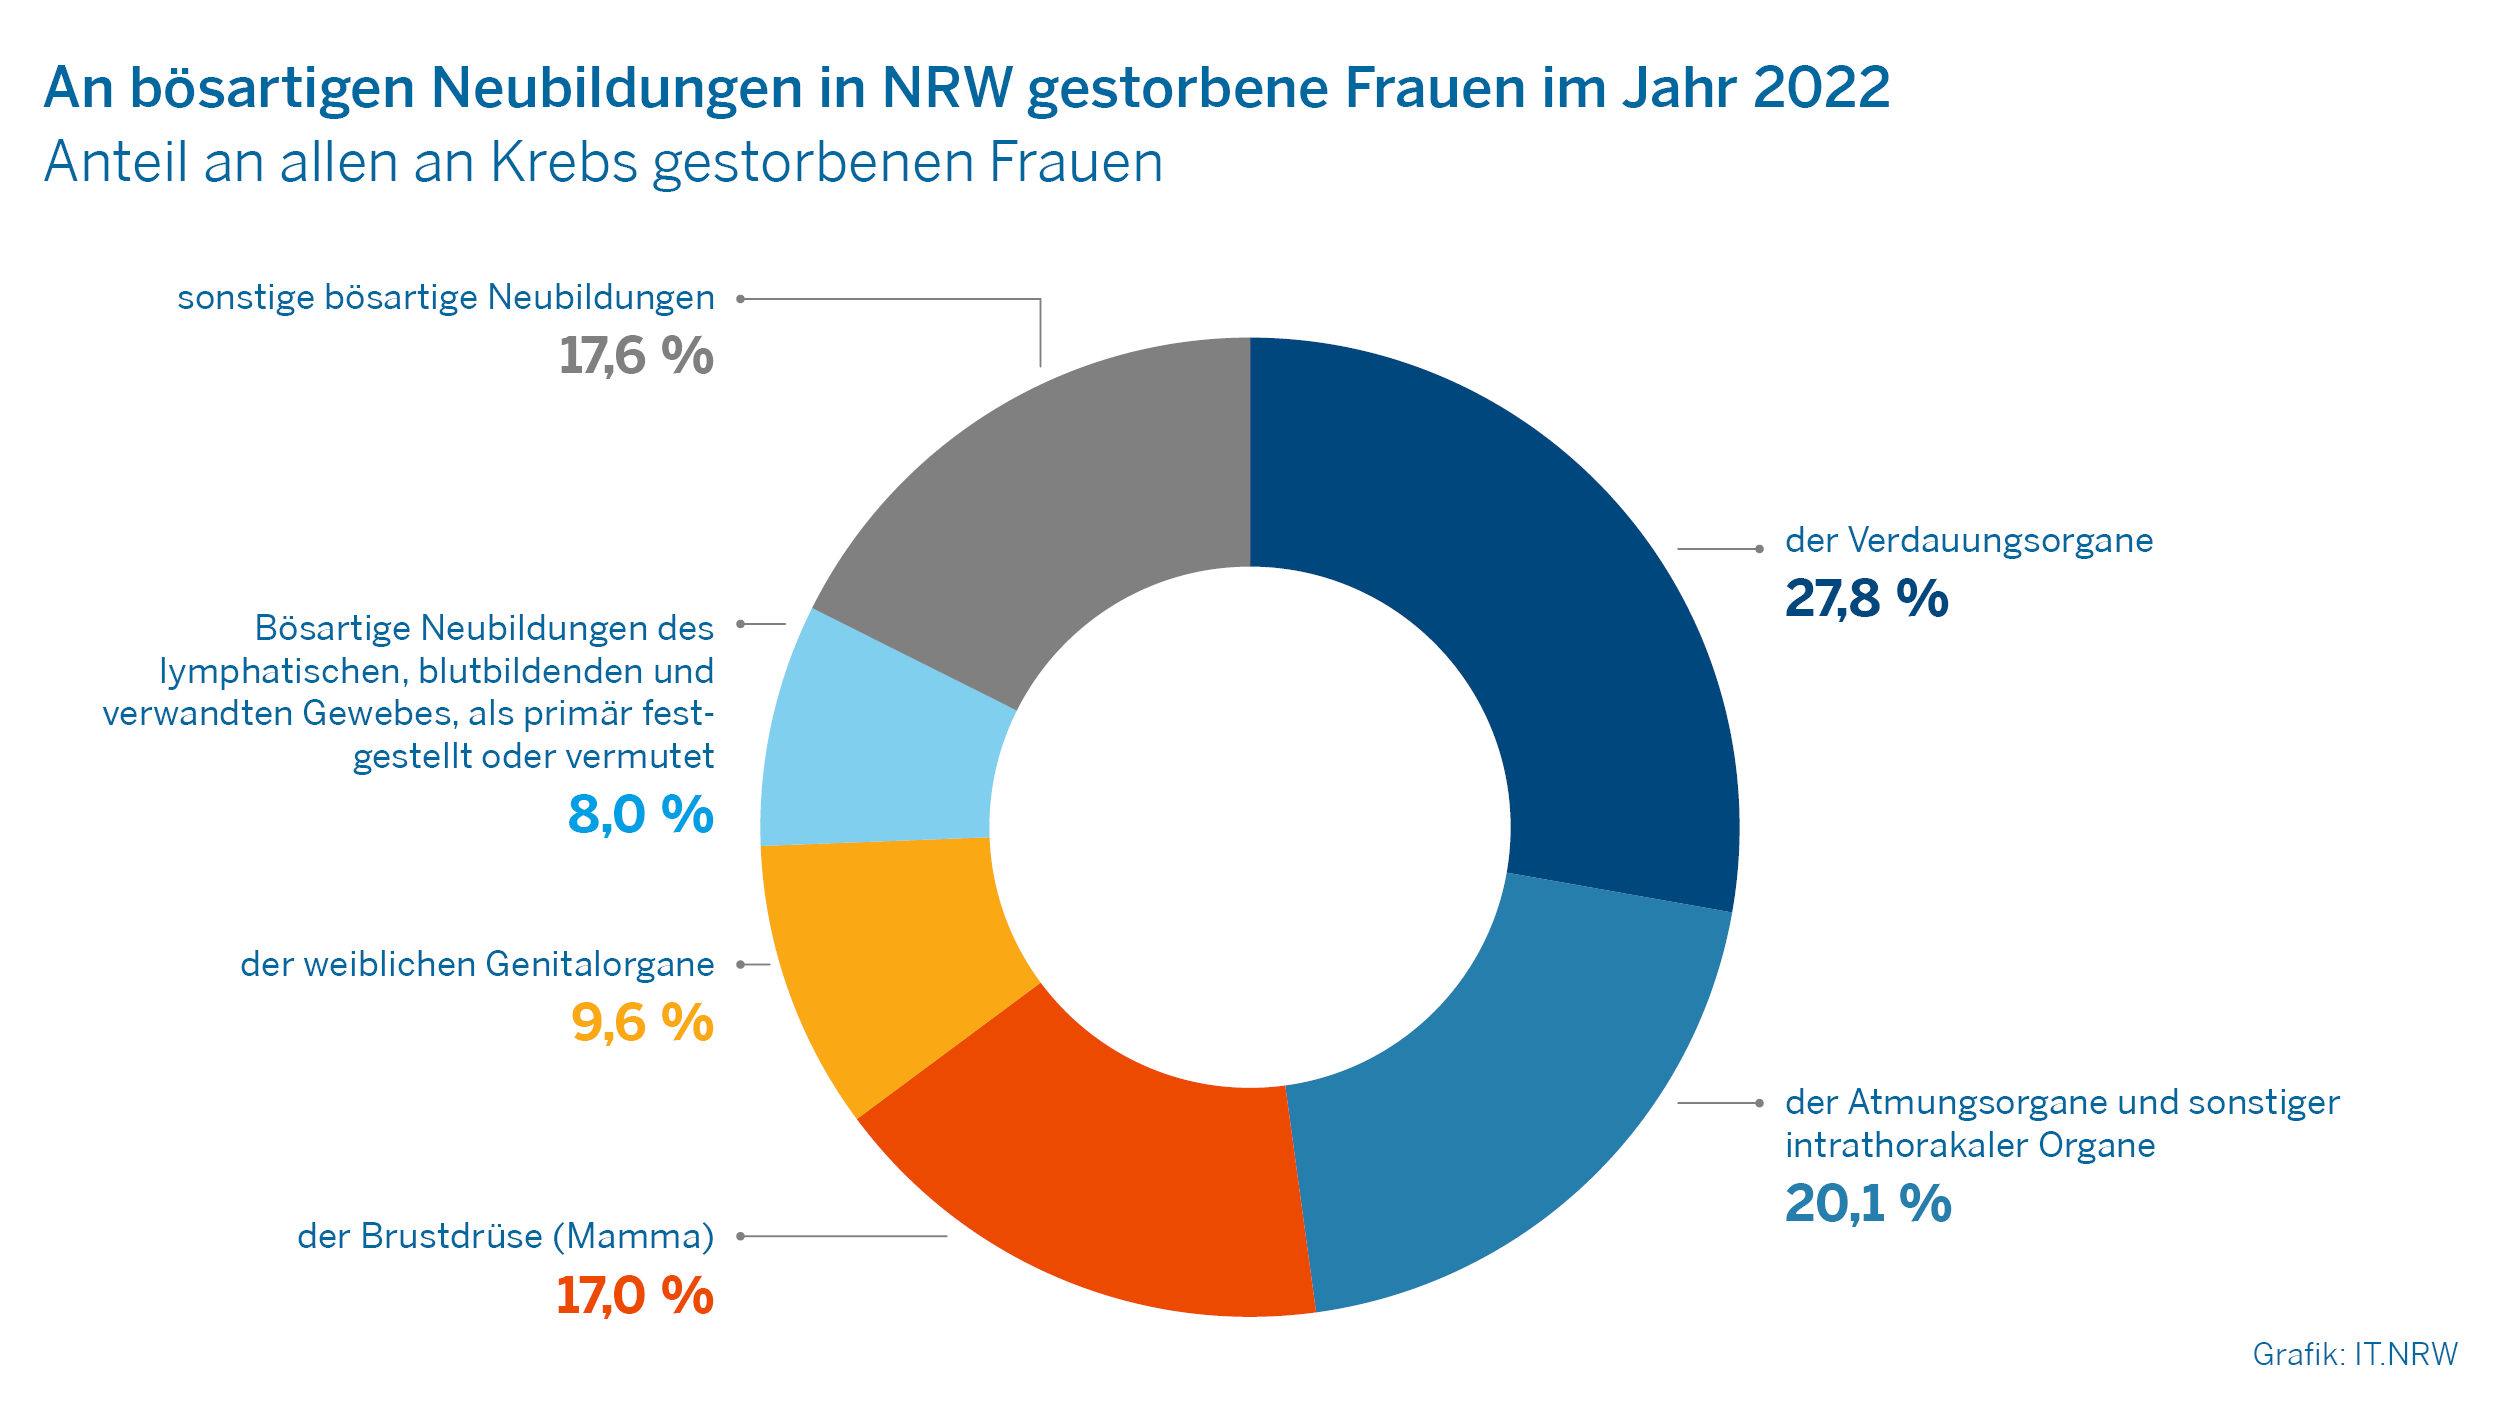 An bösartigen Neubildungen in NRW gestorbene Frauen im Jahr 2022